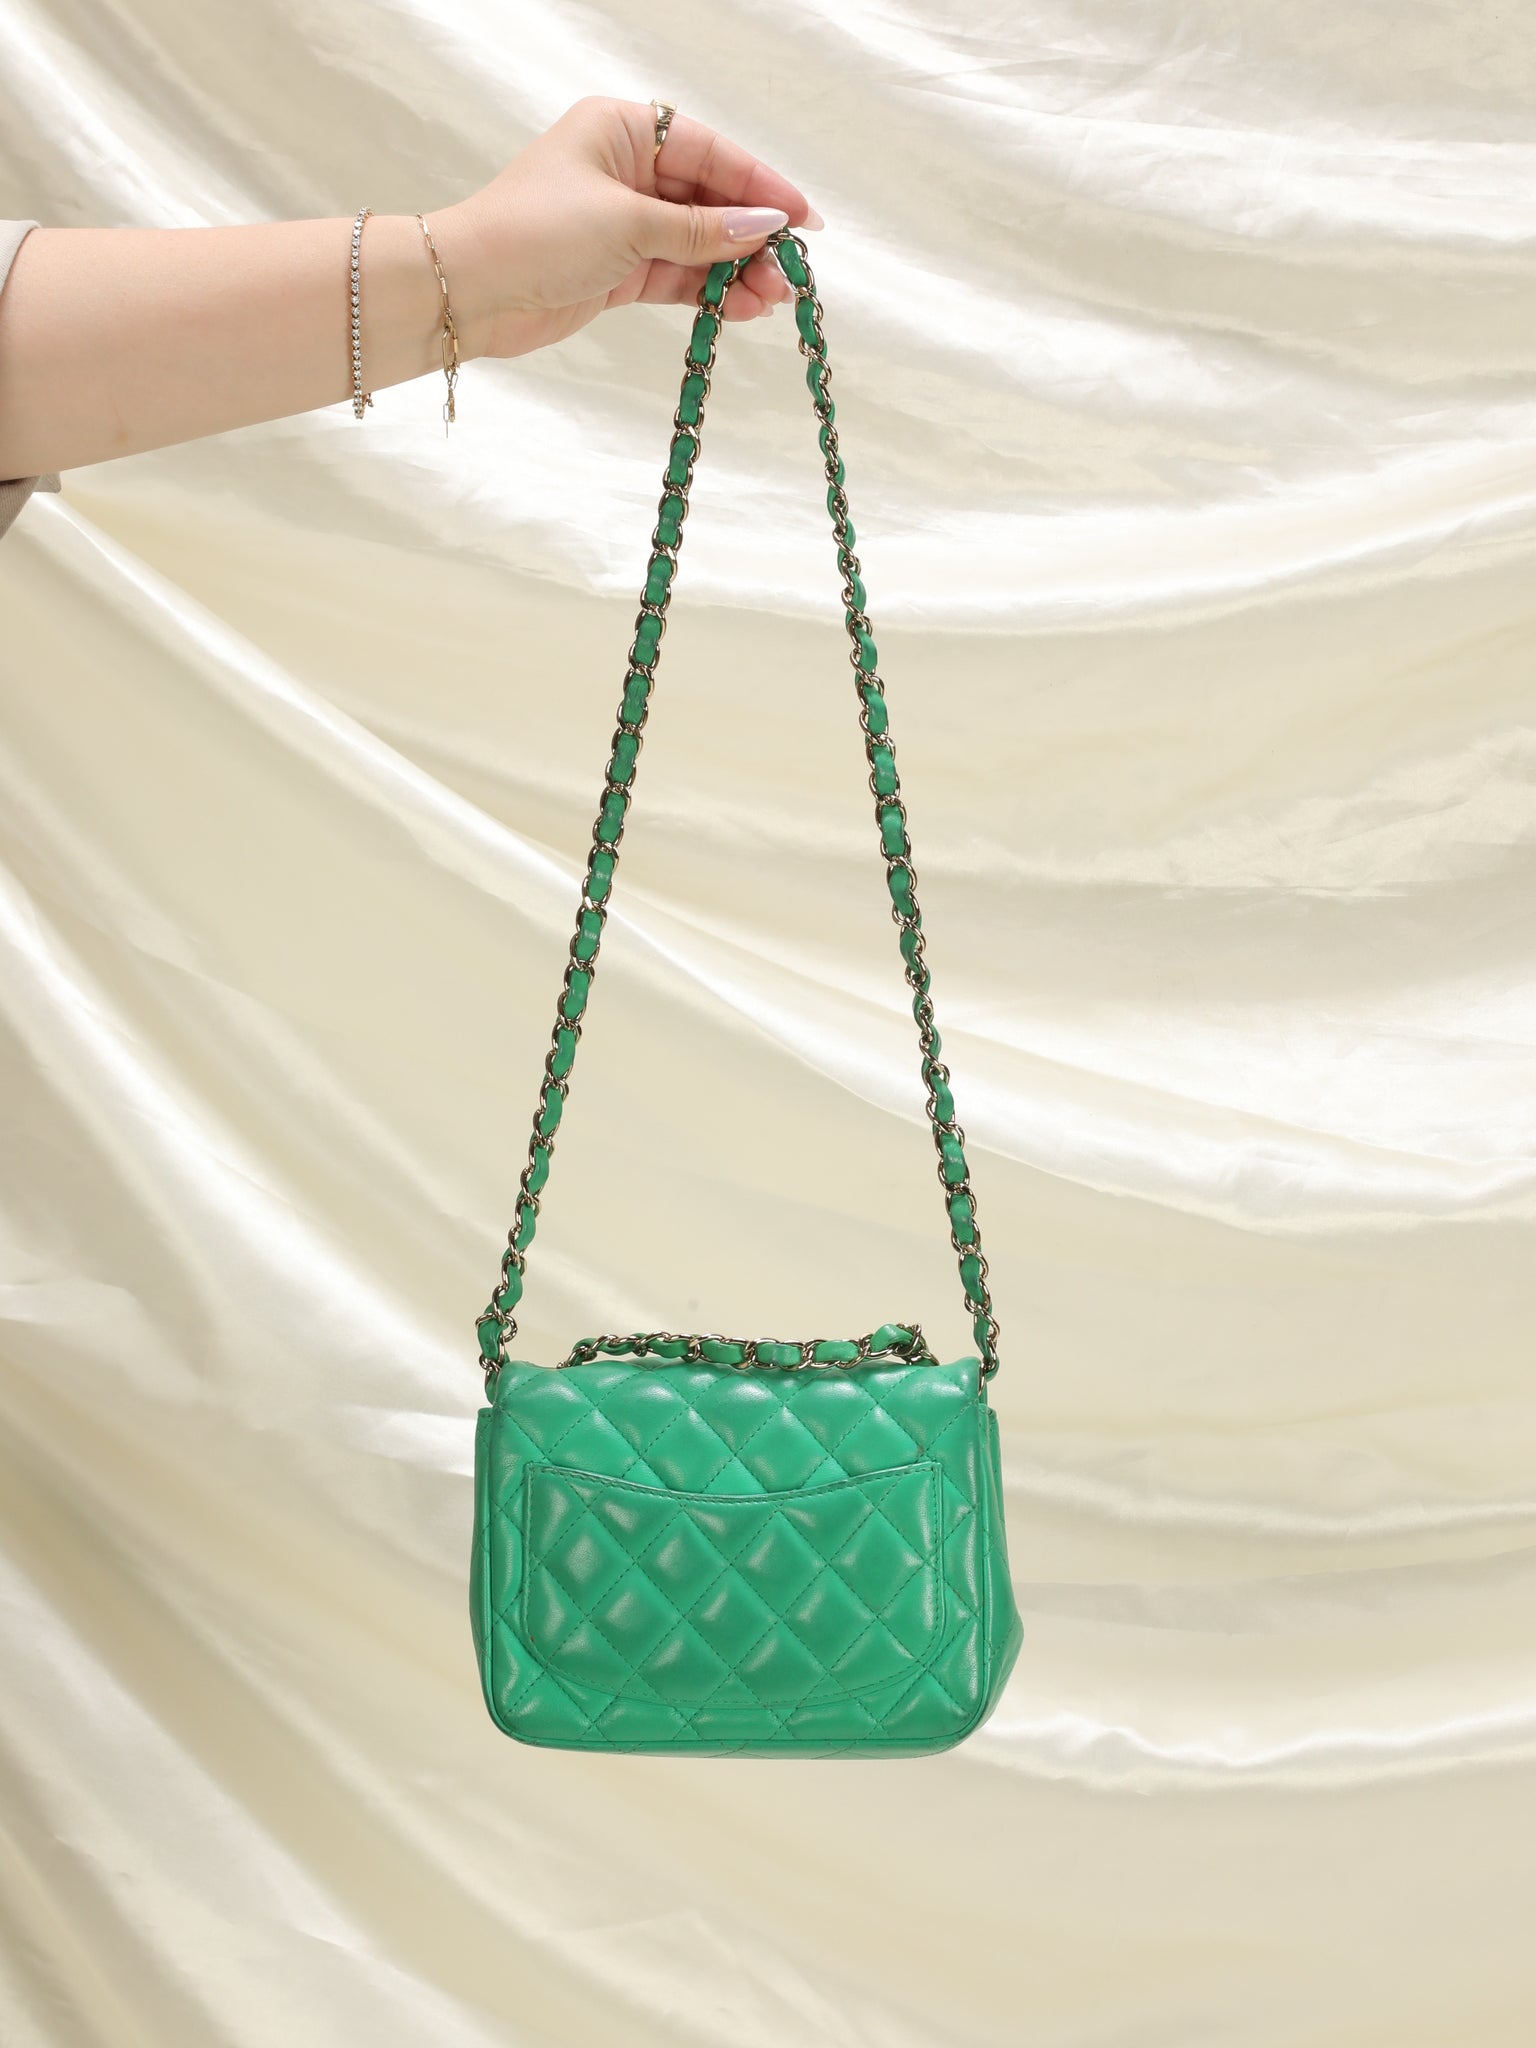 chanel green handbag